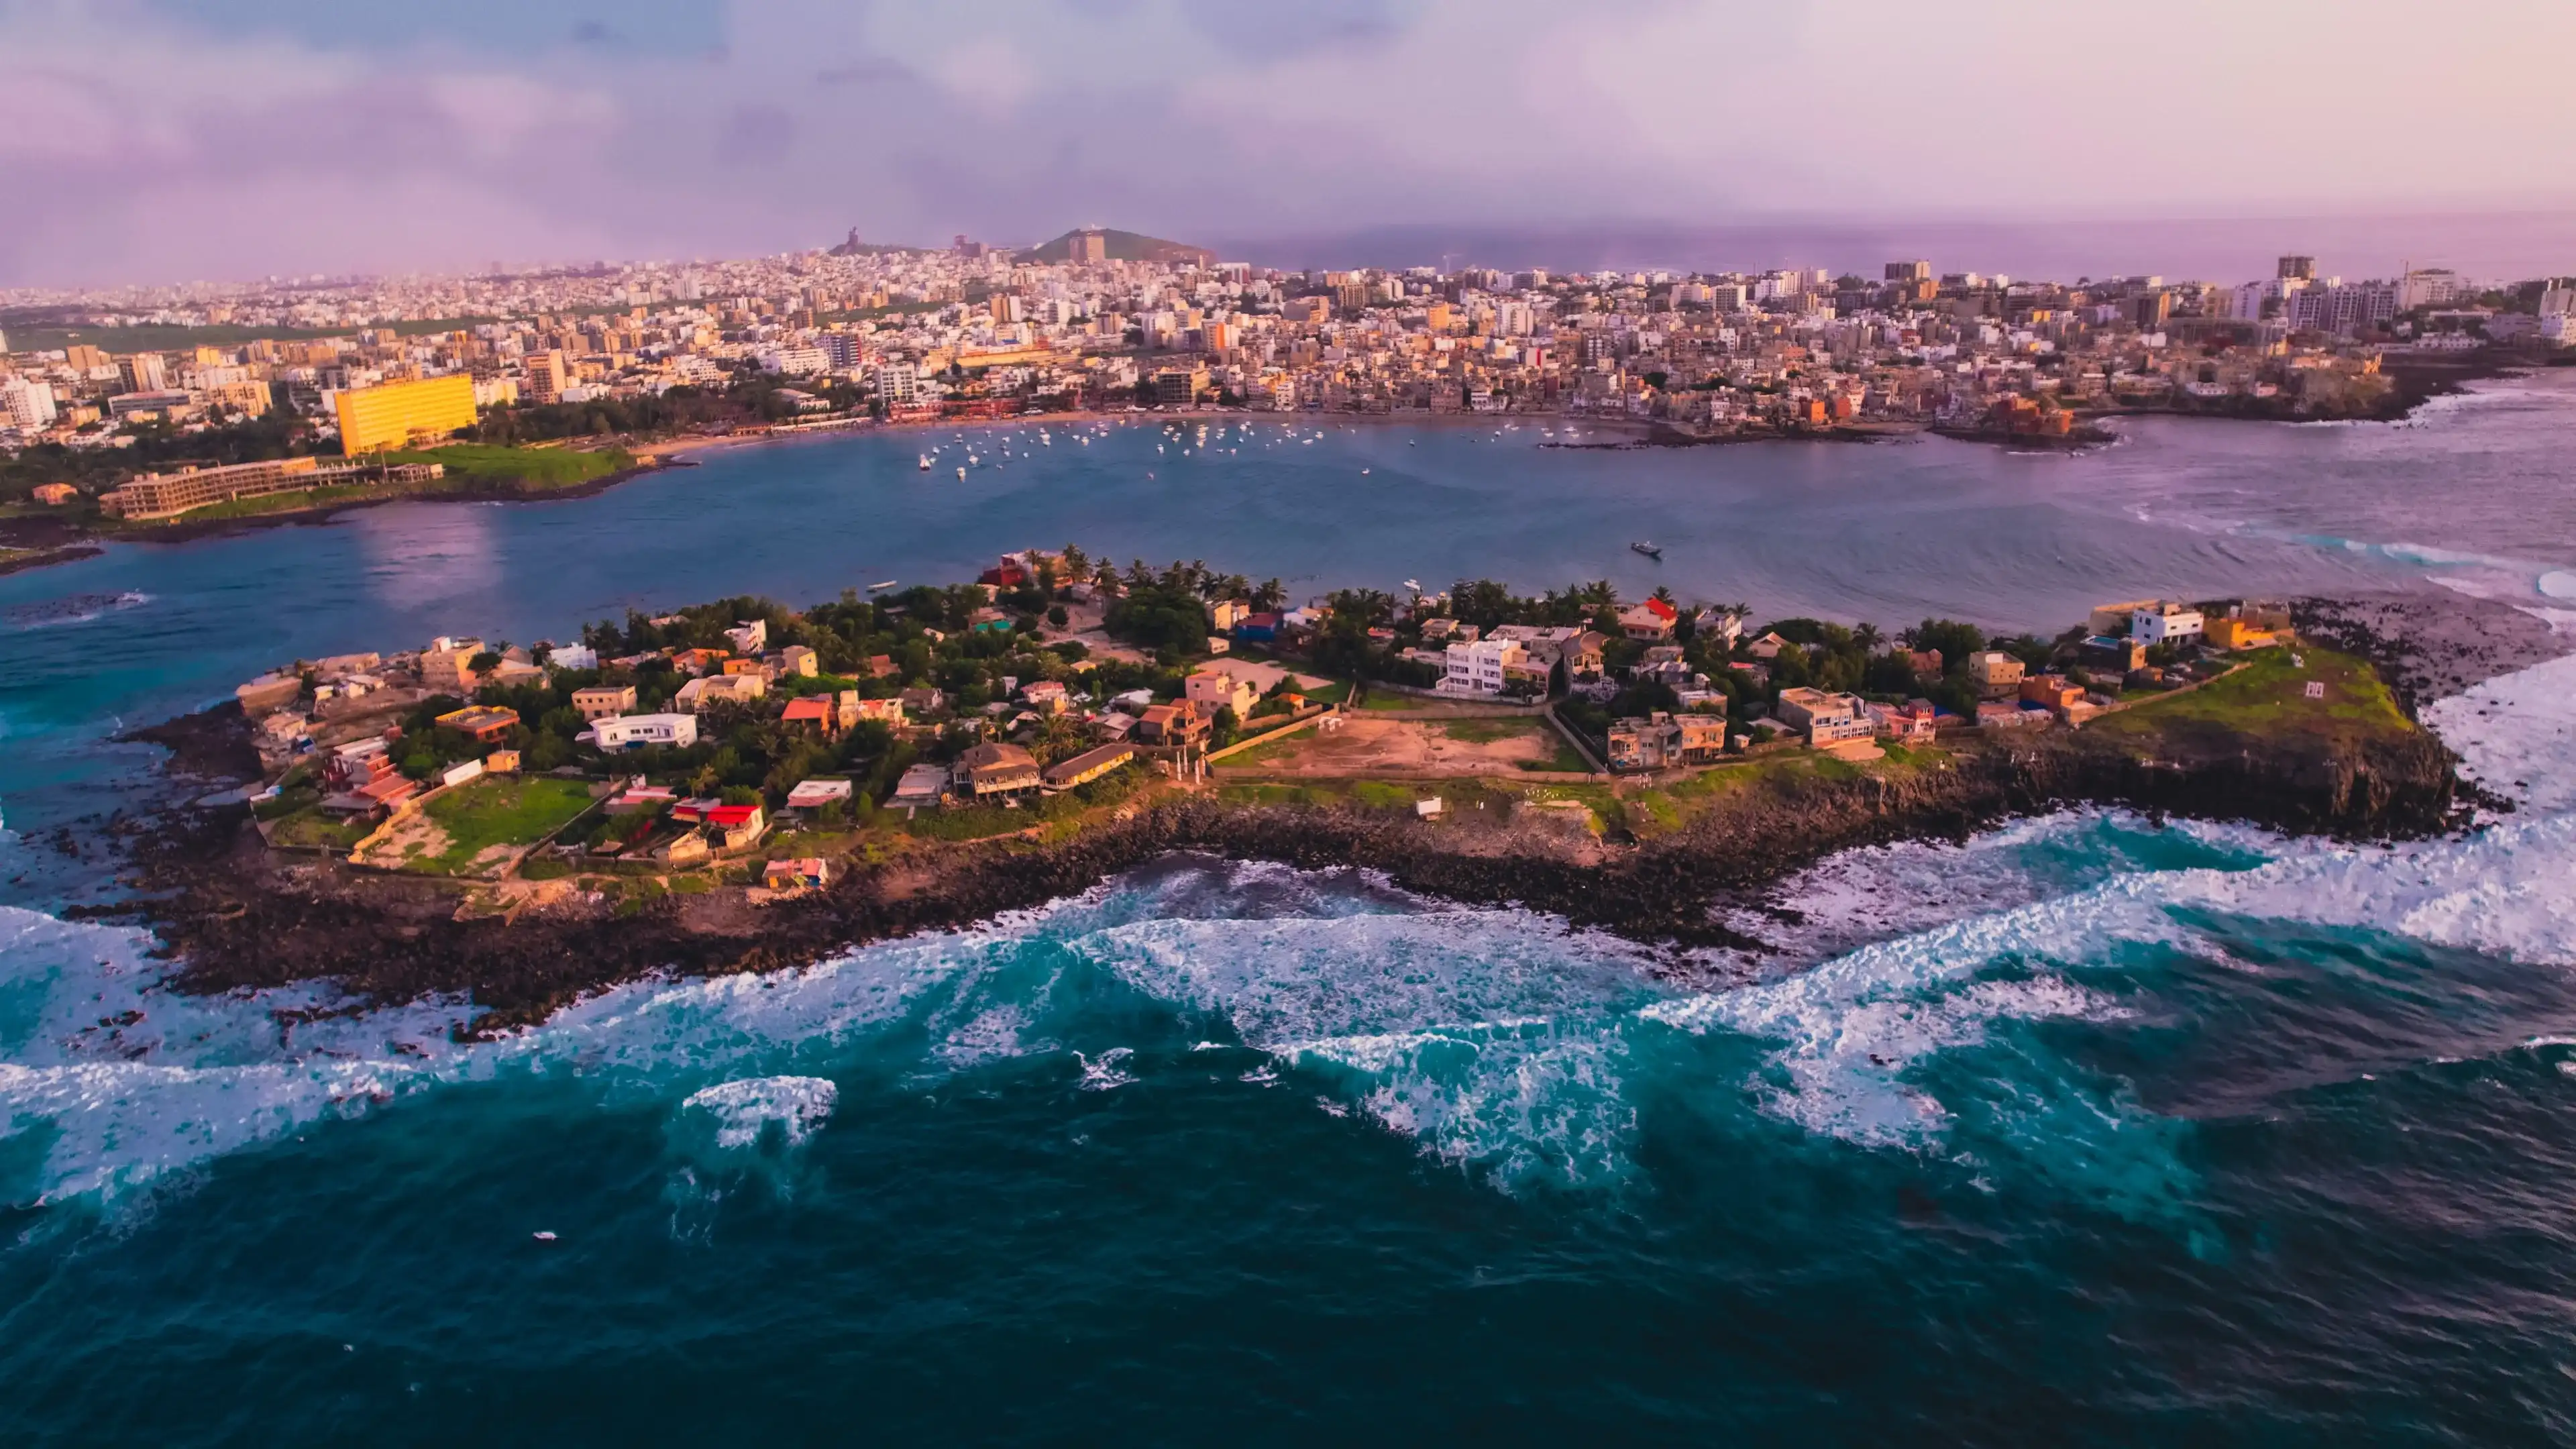 Full view of the Ngor island in Dakar, Senegal